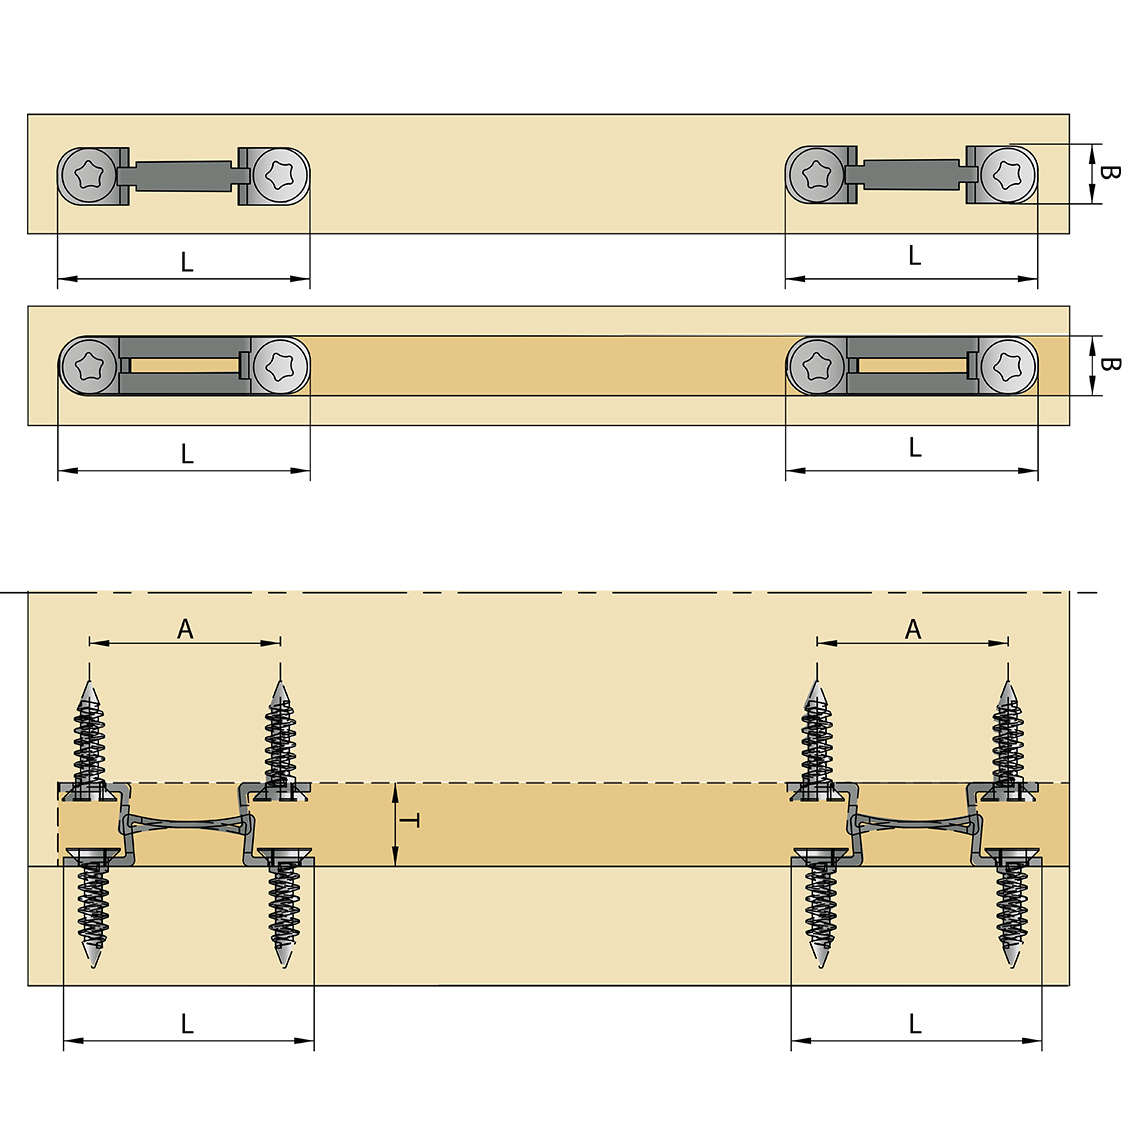 Gabarit de perçage et de profondeur pour MODULAR-System - Knapp Connectors